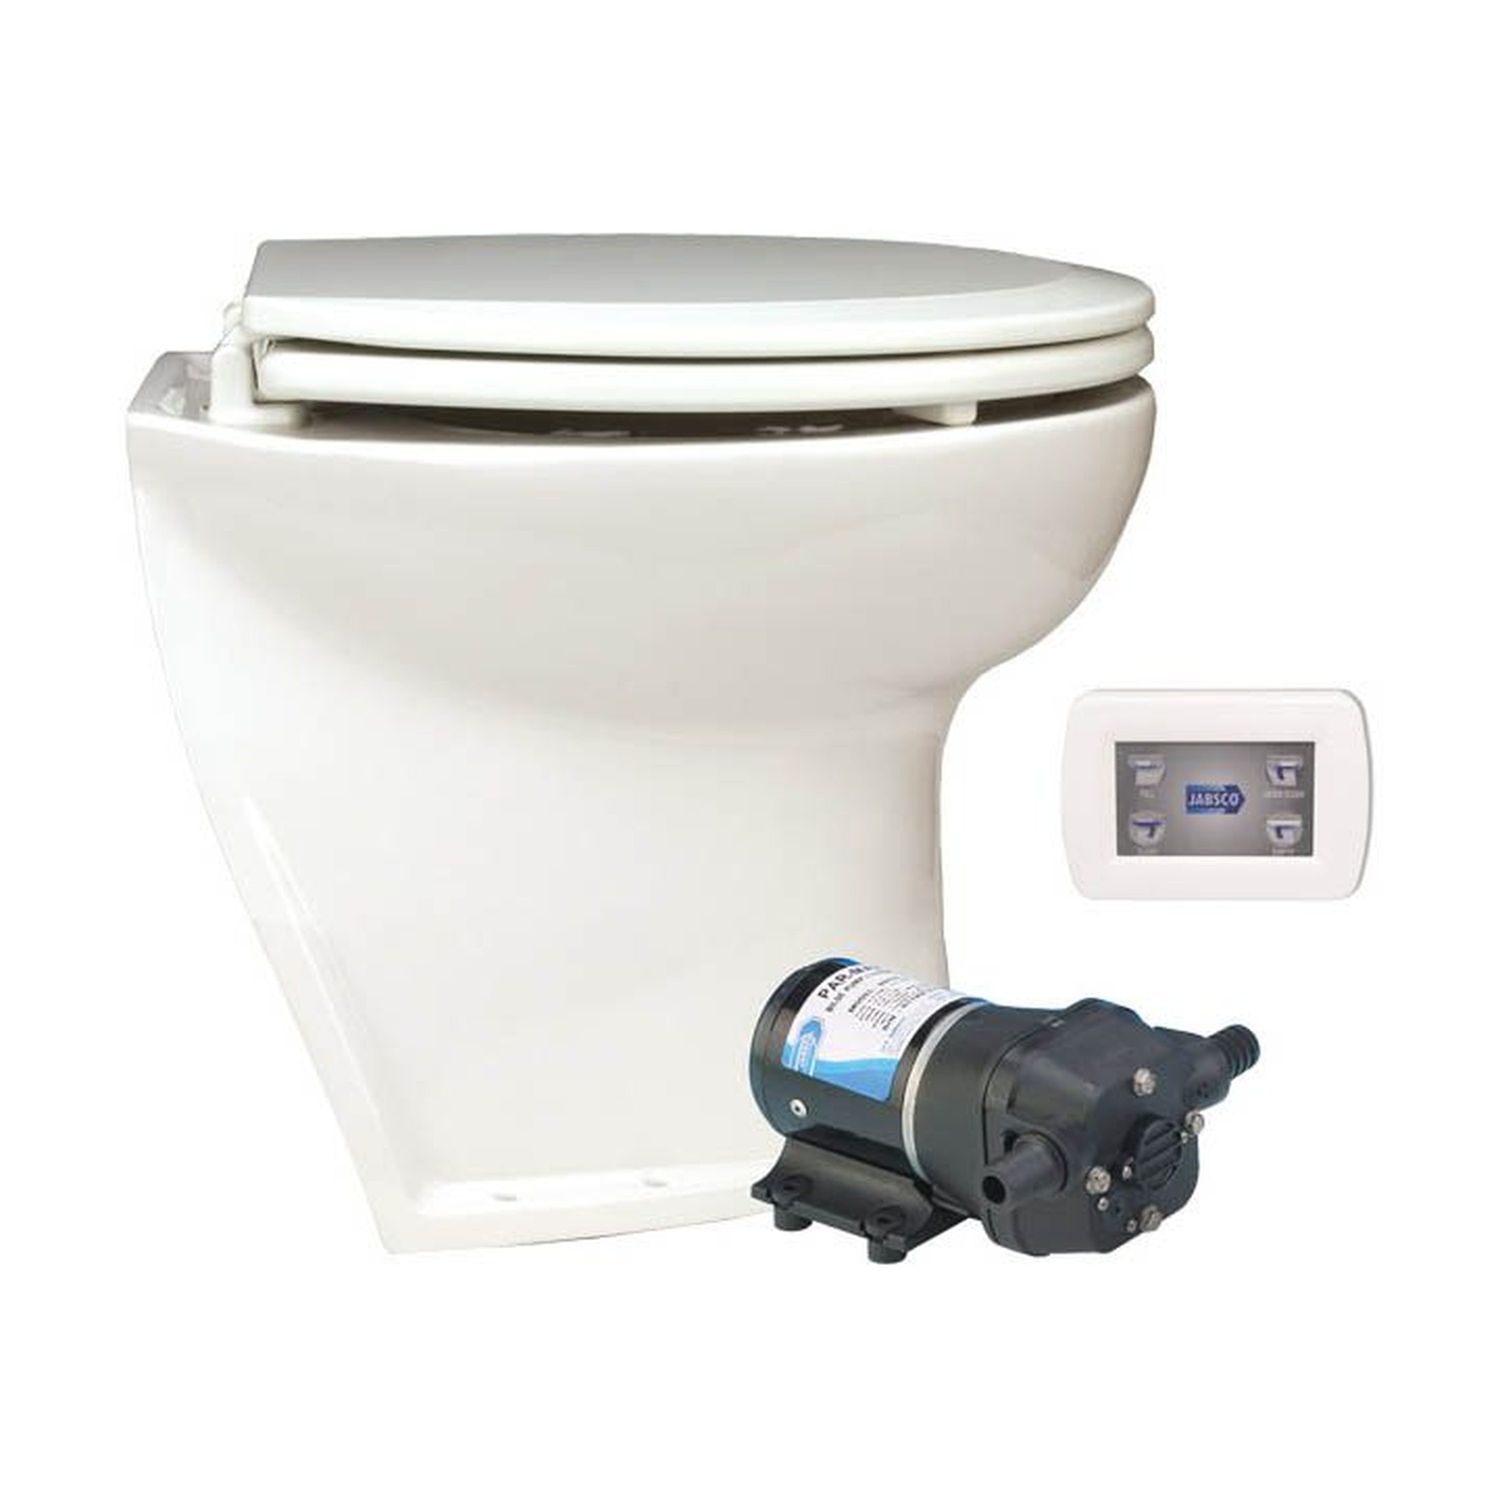 Jabsco El-toalett Deluxe Flush 14'', Vinklad, Pump 12v